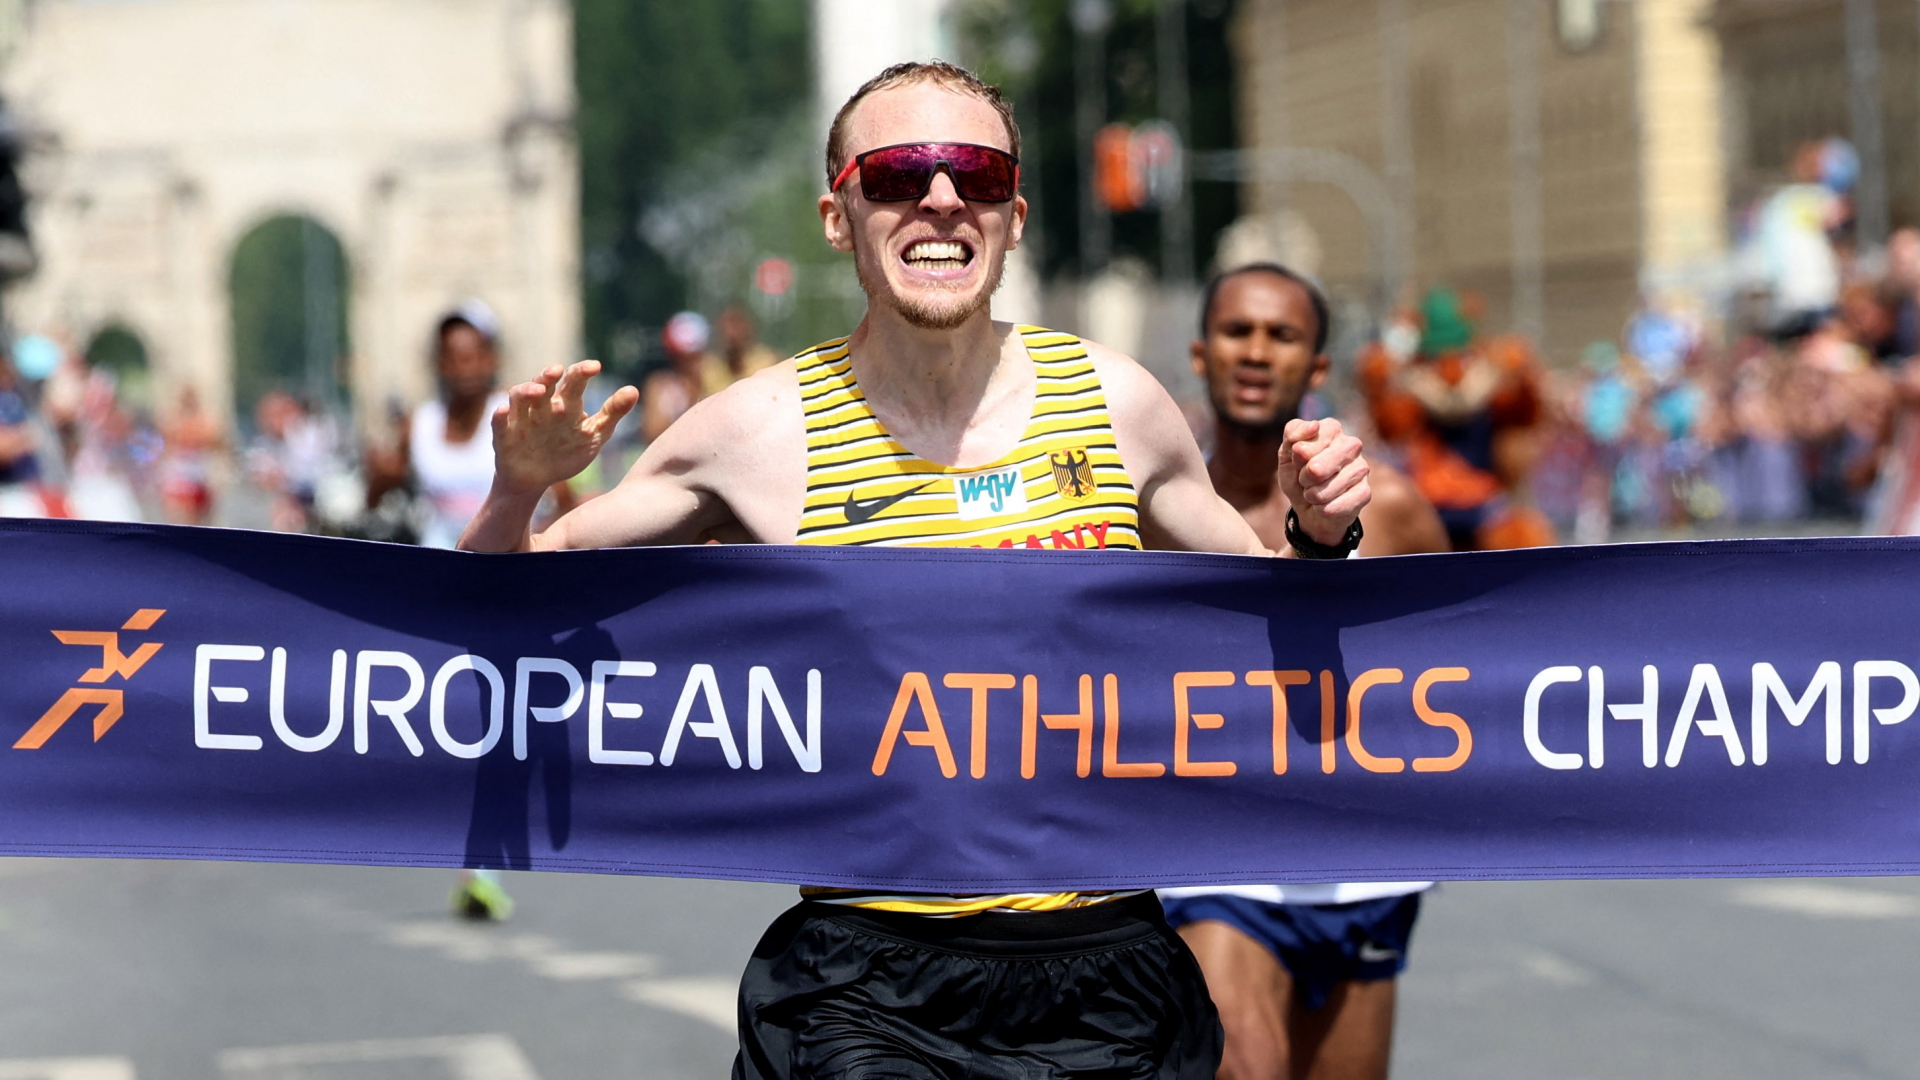 Marathonläufer Richard Ringer beim Einlaufen ins Ziel bei den European Championships in München. | REUTERS